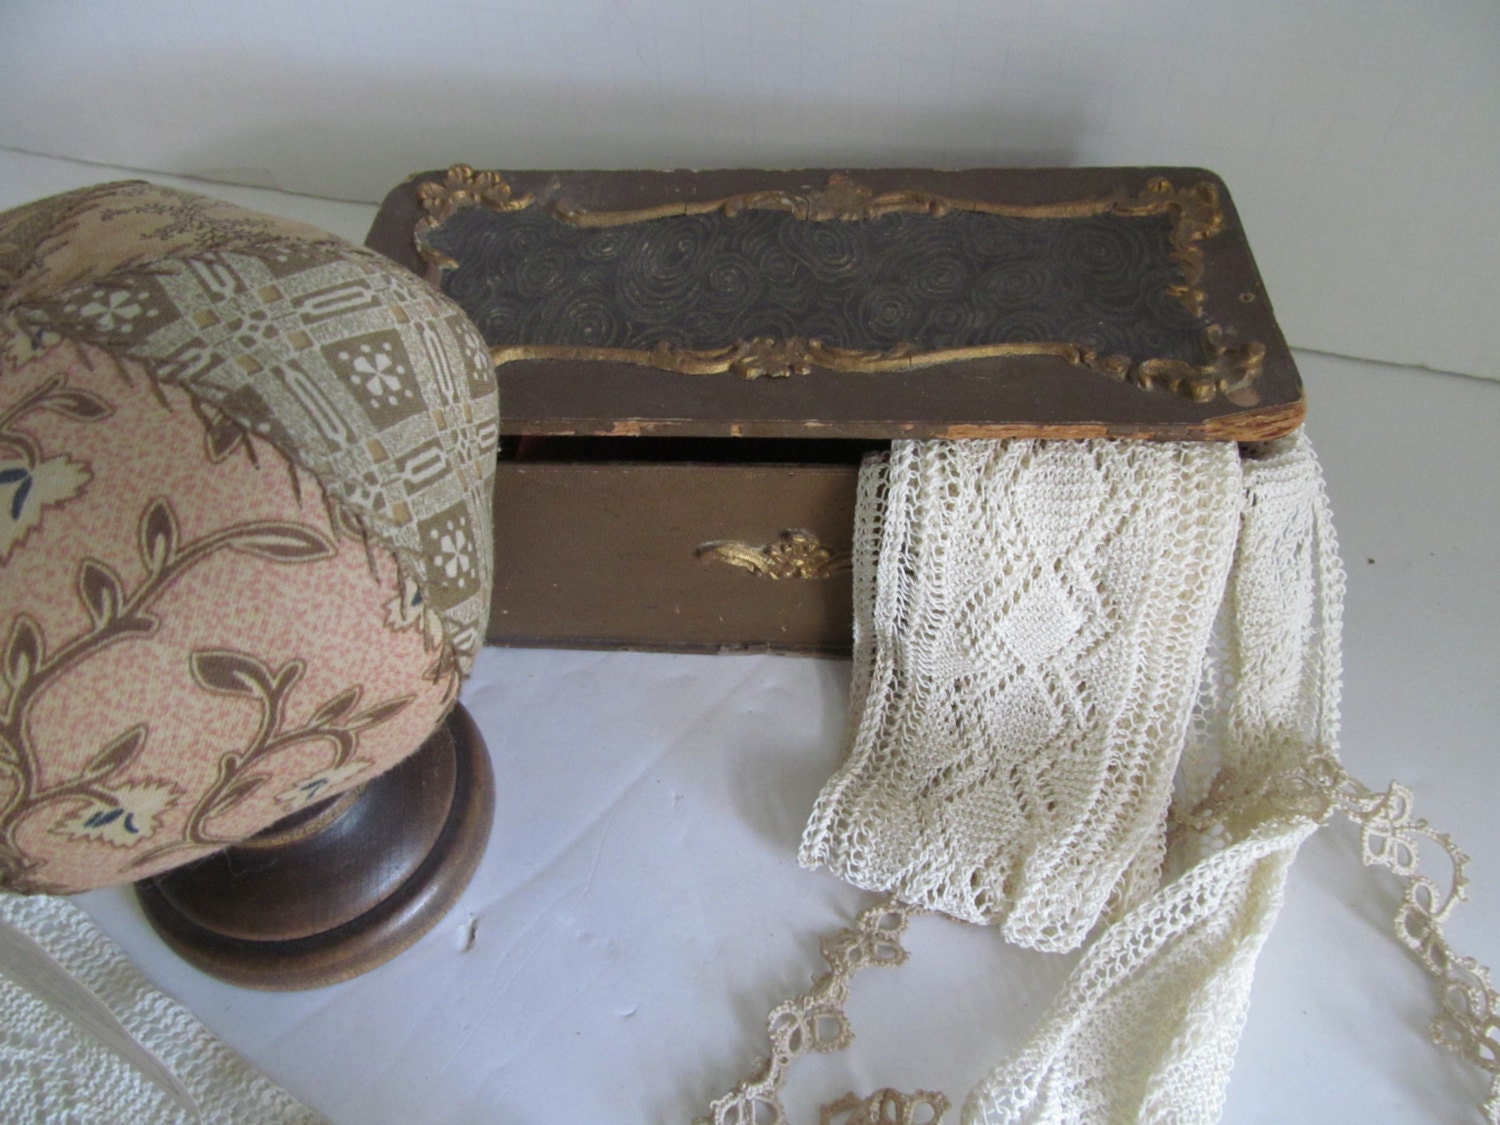 Antique Sewing Box Antique Victorian Sewing Box Sewing Notions Haberdashery Case Haberdashery Display Drawer Civil War Era